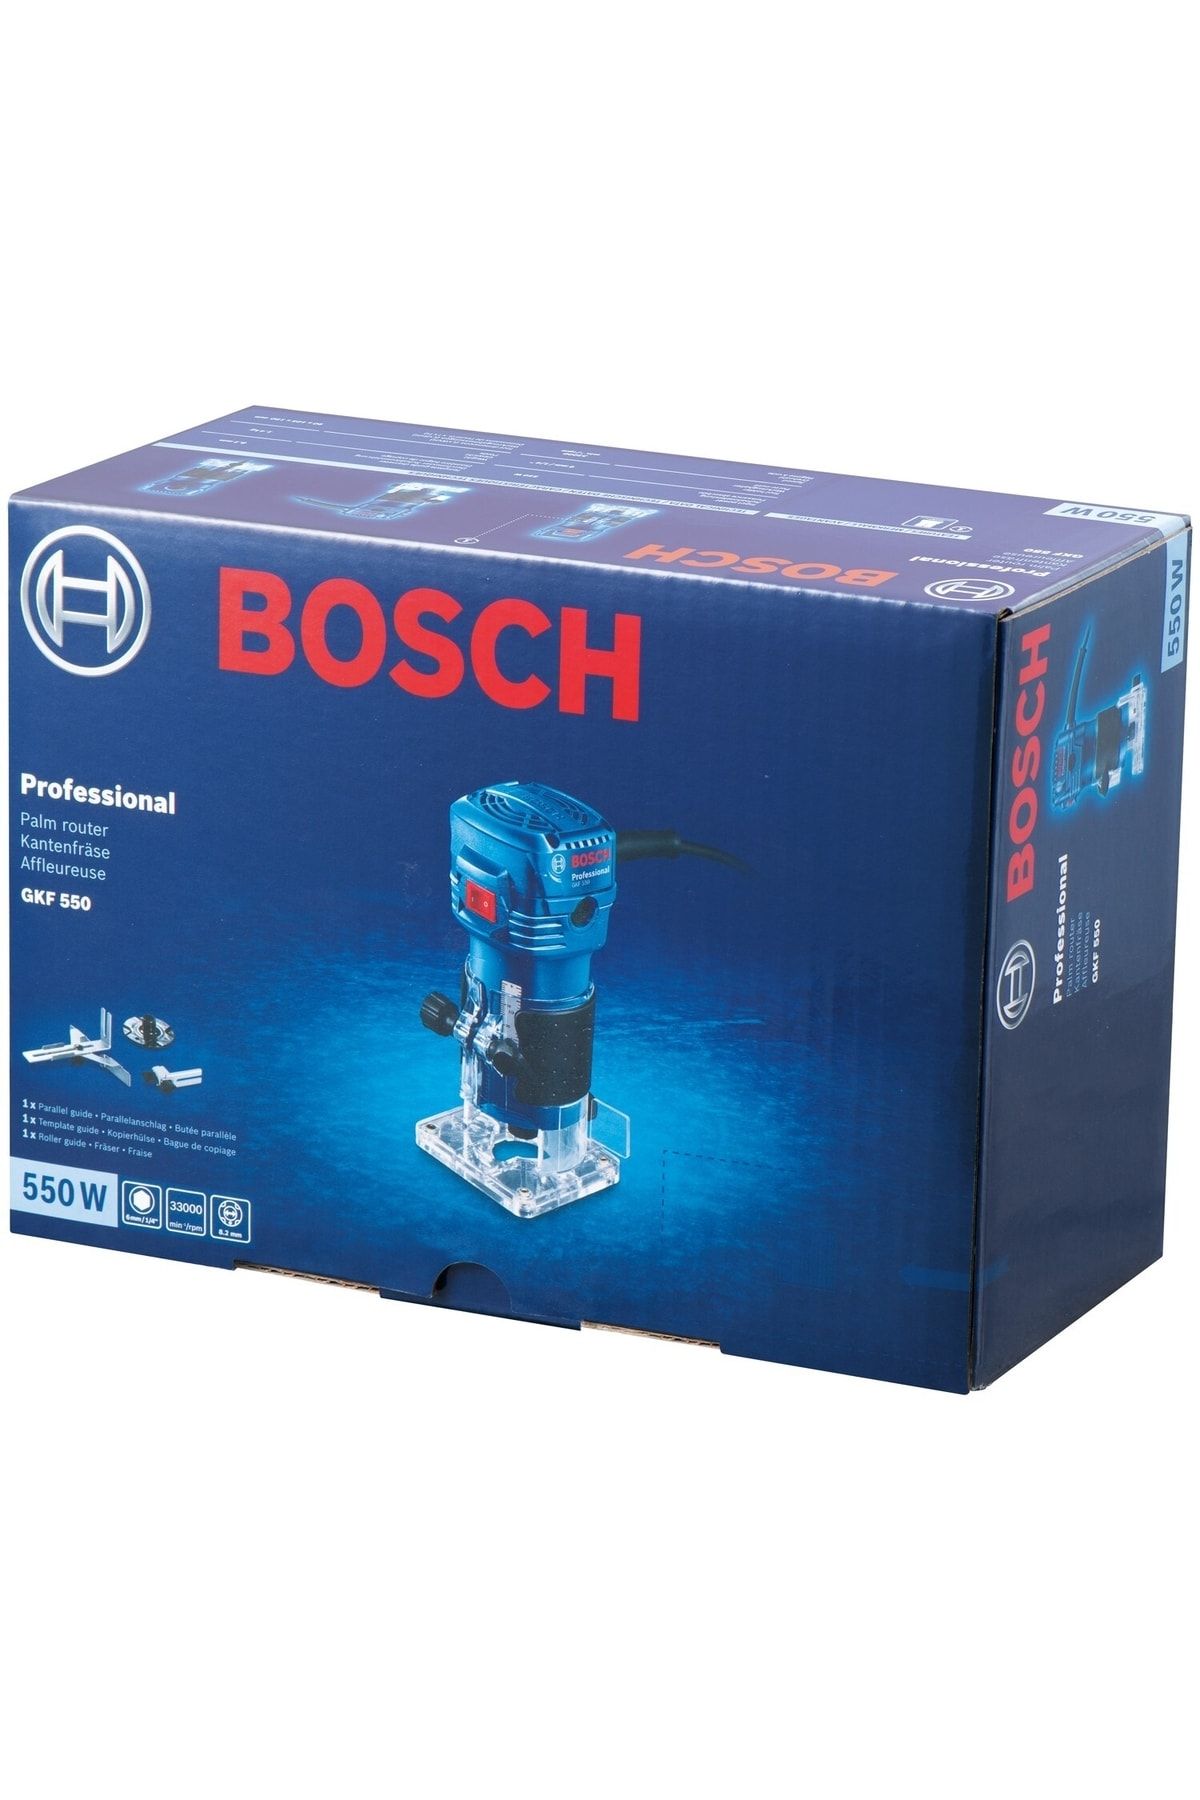 Bosch Professional Gkf 550 Çok Amaçlı Freze Fiyatı, Yorumları - TRENDYOL